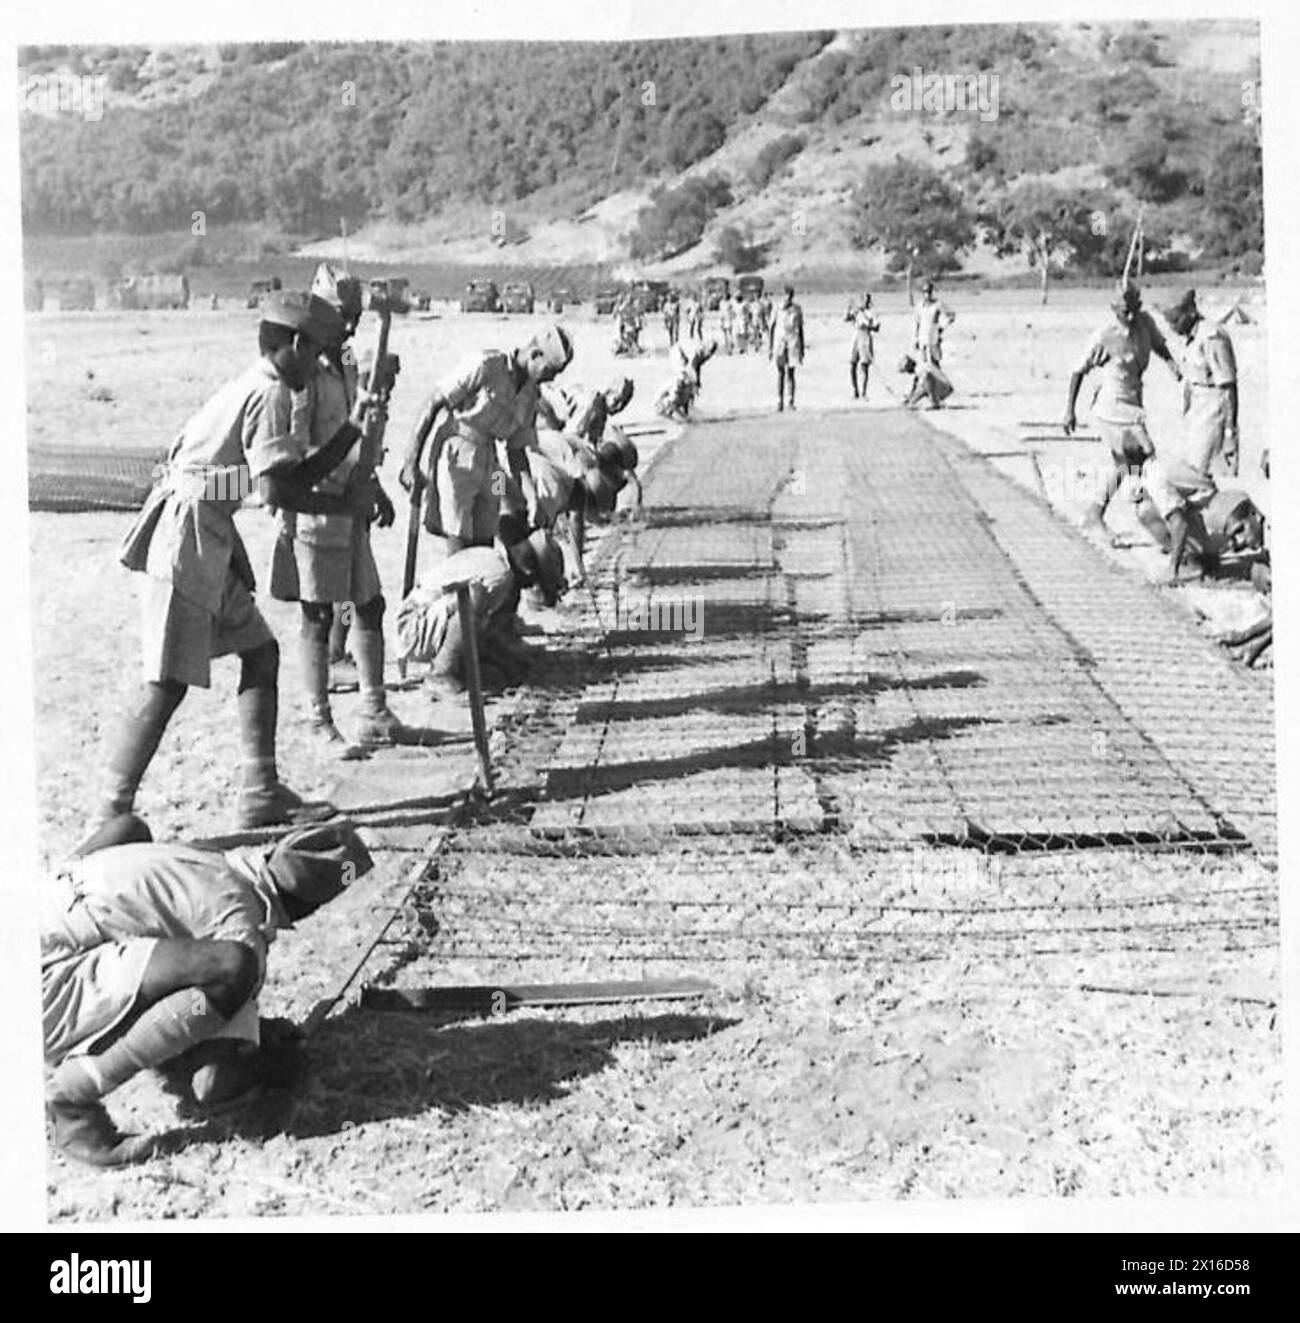 EIN INDISCHES JODHPUR SARDOR-INFANTERIEREGIMENT IN NORDAFRIKA - Truppen erhielten Anweisungen bei der Verlegung der 'Summerfelt'-Strecke, die weitgehend beim Bau der britischen Flugplätze verwendet wurde Stockfoto